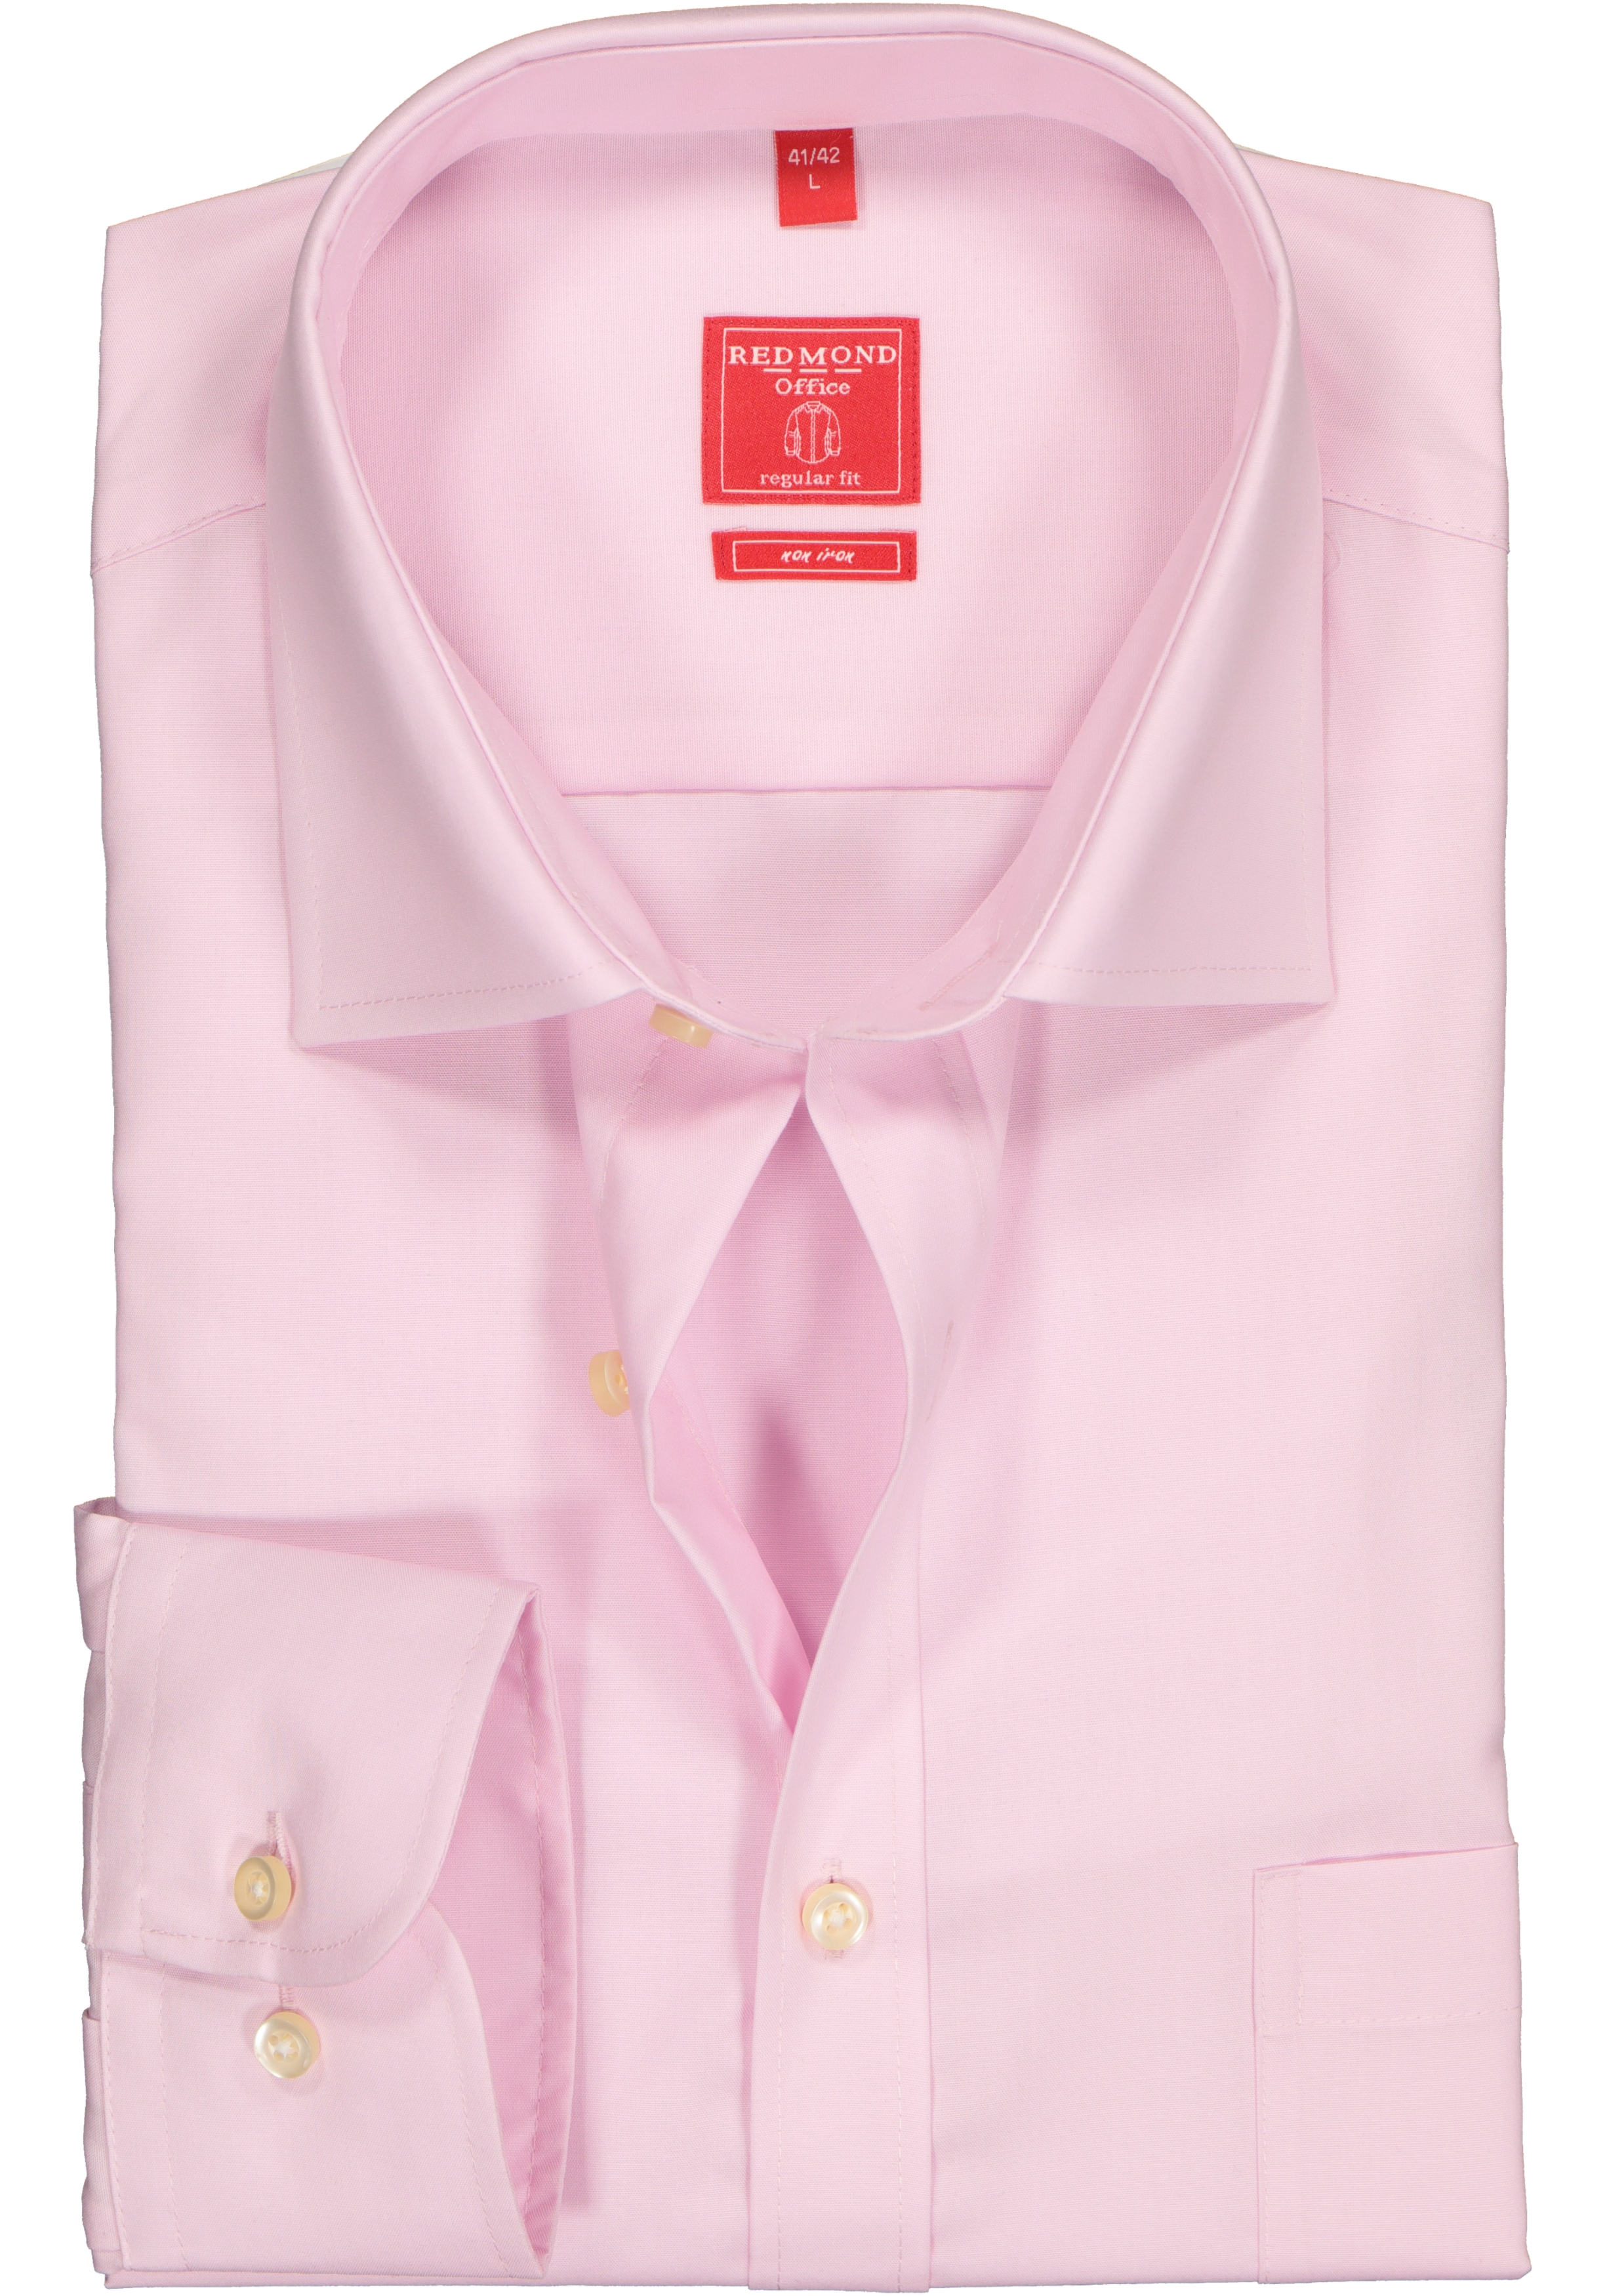 Redmond regular fit overhemd, roze